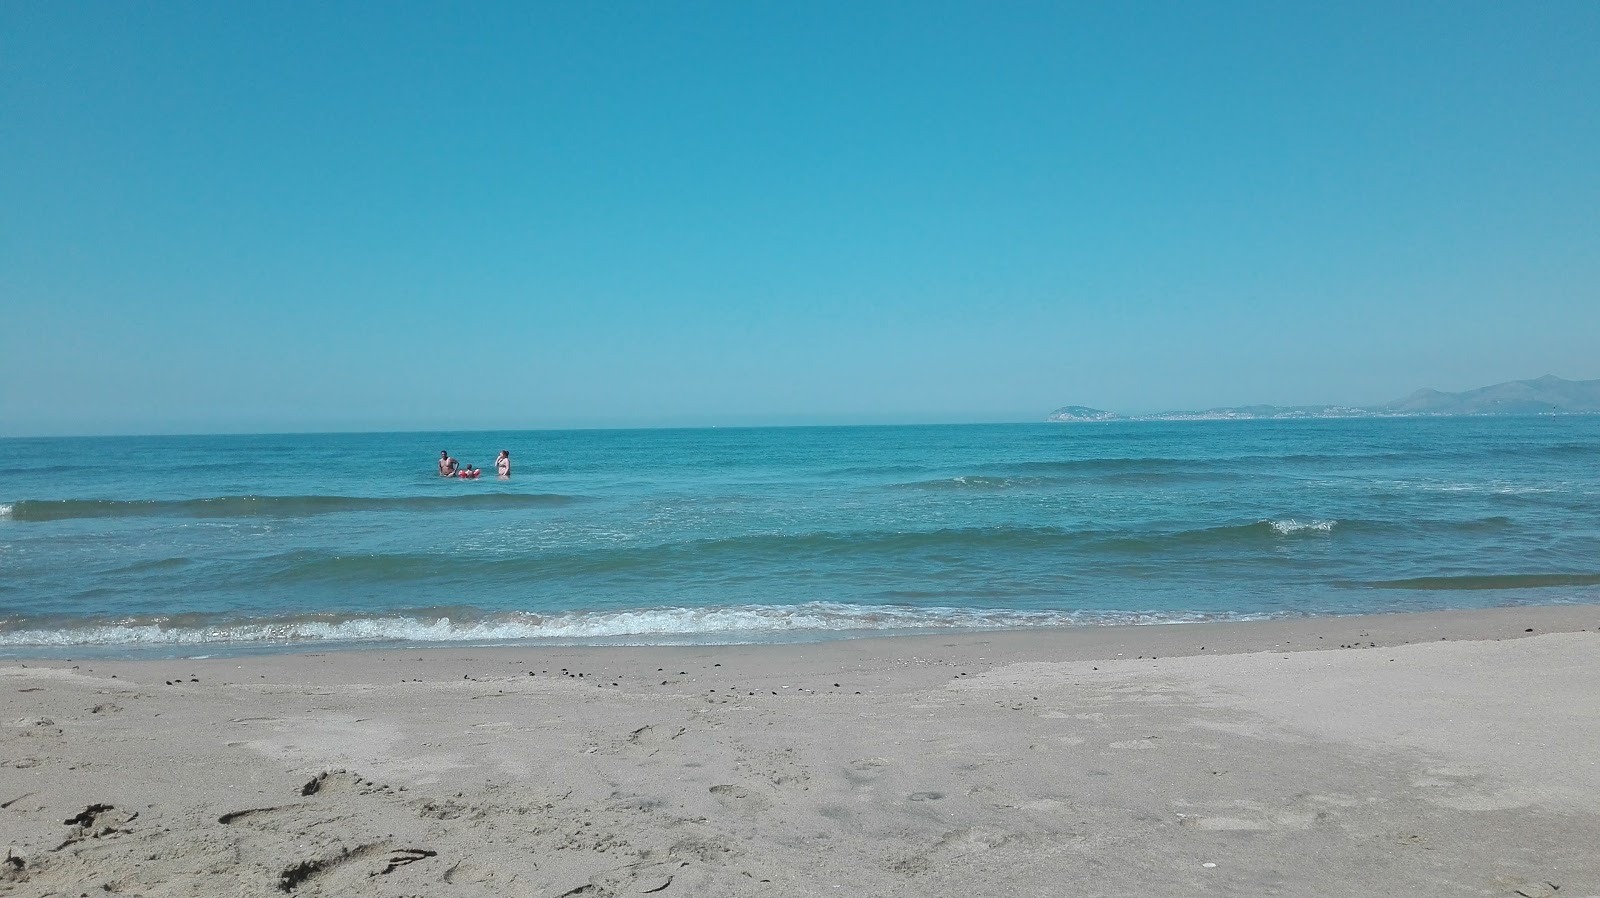 Marina di Minturno beach'in fotoğrafı - rahatlamayı sevenler arasında popüler bir yer